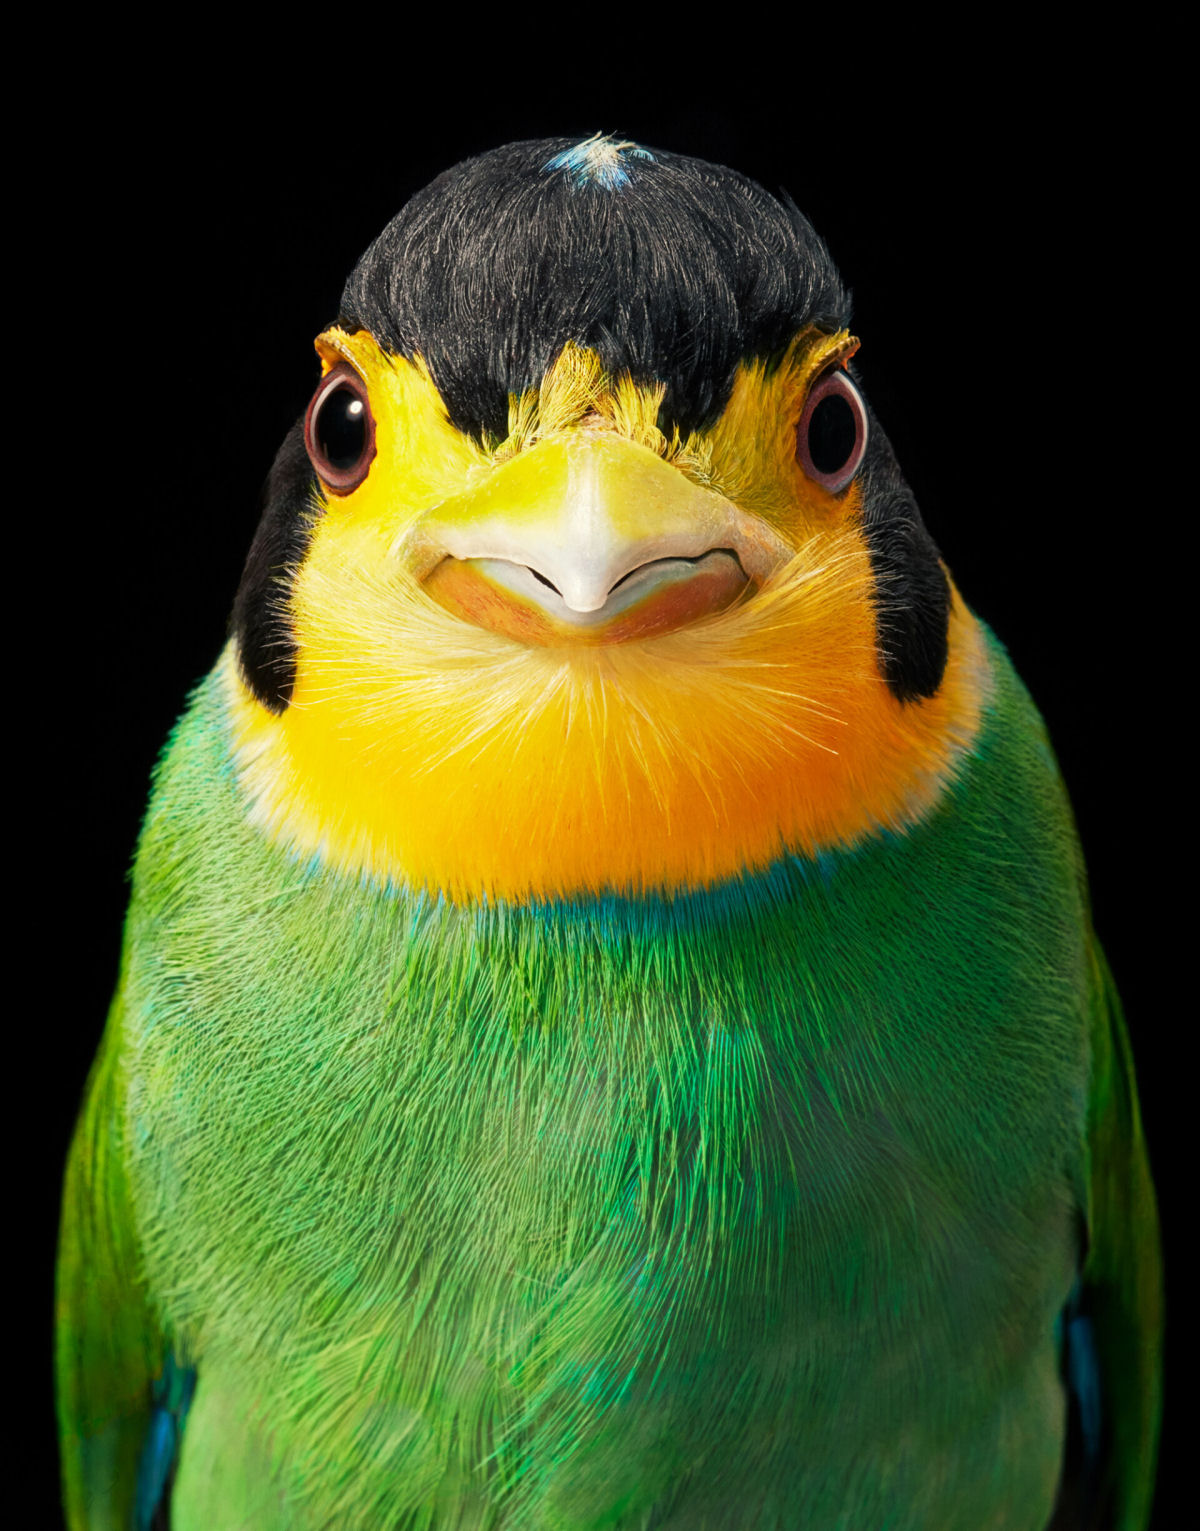 Fotógrafo londrino continua emoldurando pássaros ameaçados de extinção em retratos impressionantes 06